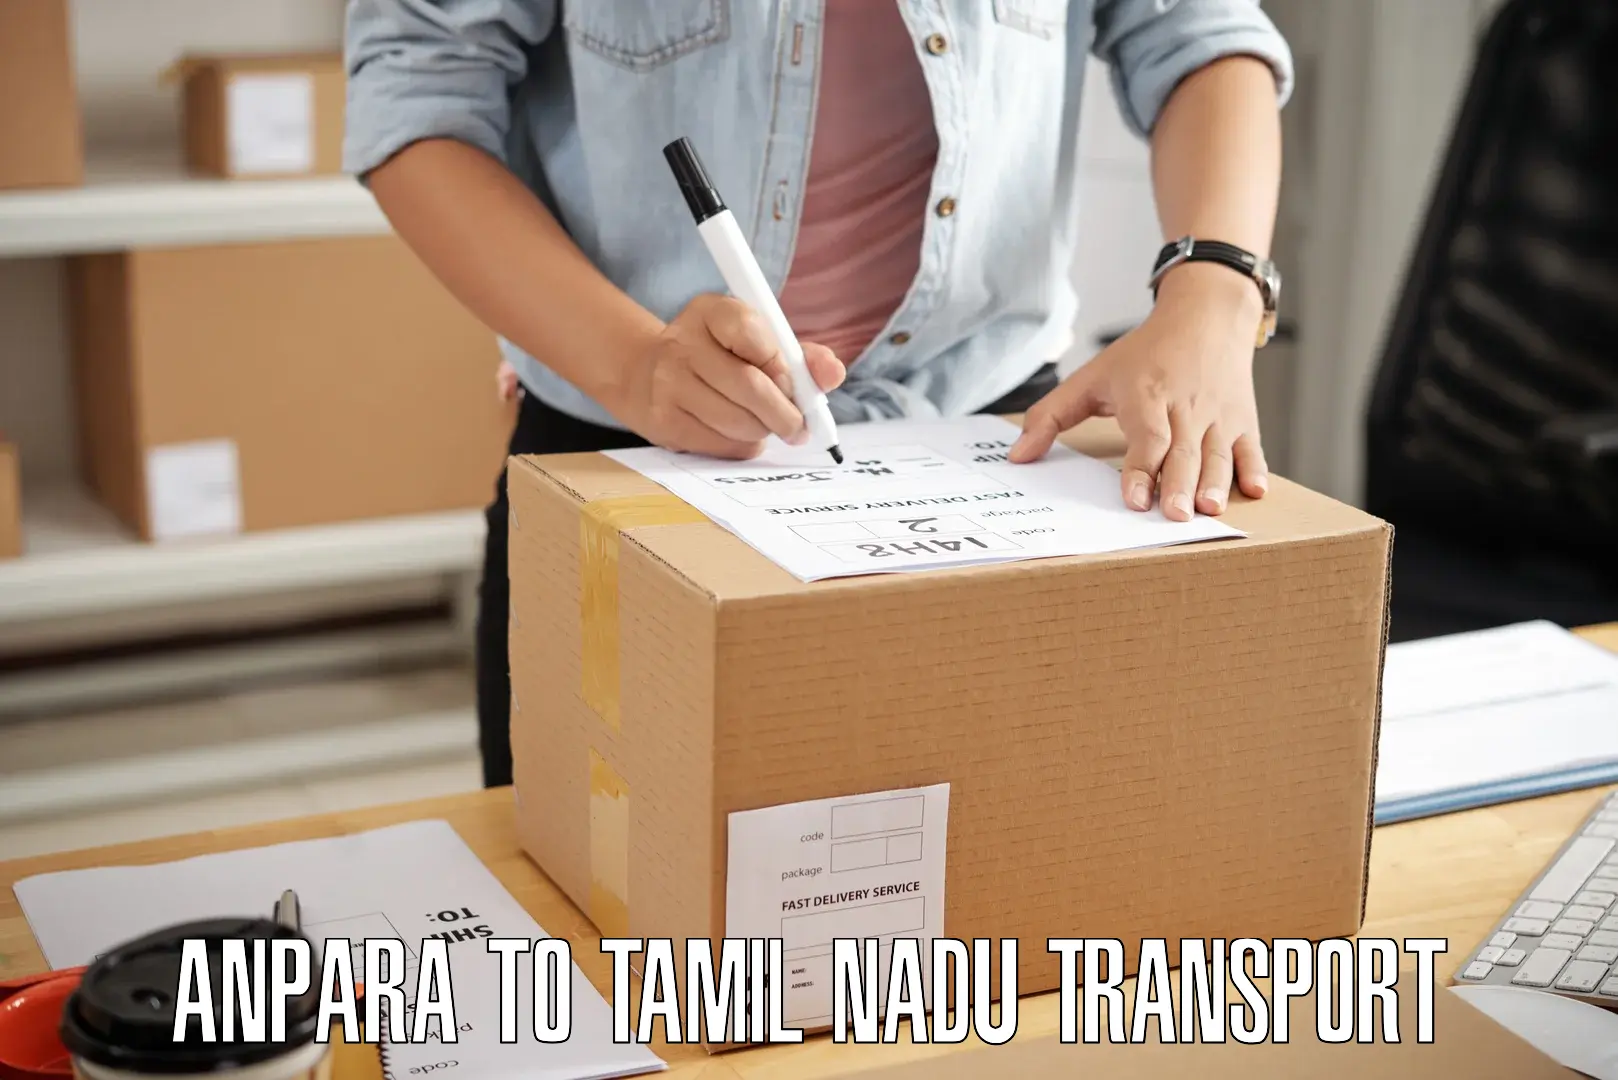 Furniture transport service in Anpara to Tamil Nadu